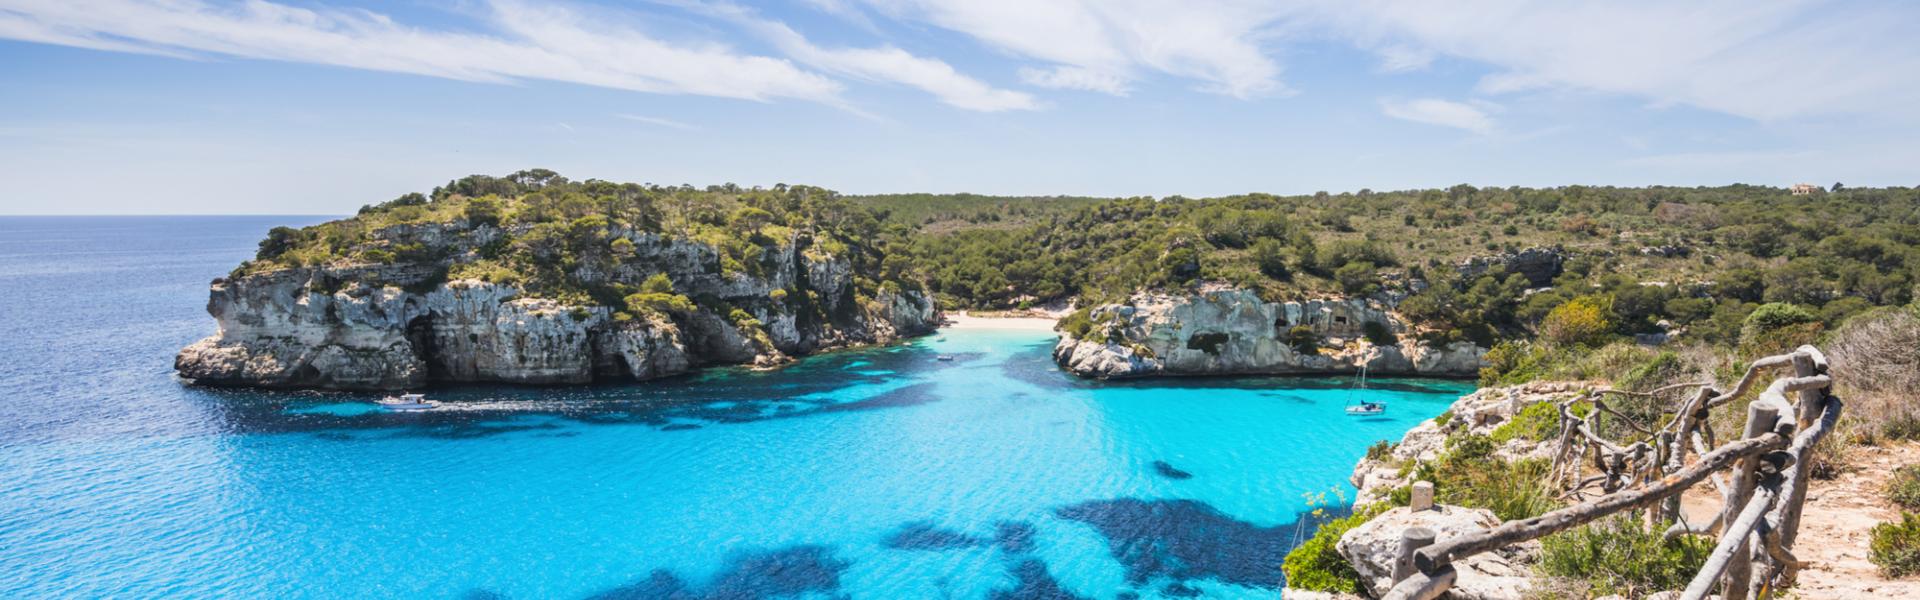 Ferienwohnungen & Ferienhäuser für Urlaub auf Menorca - Casamundo